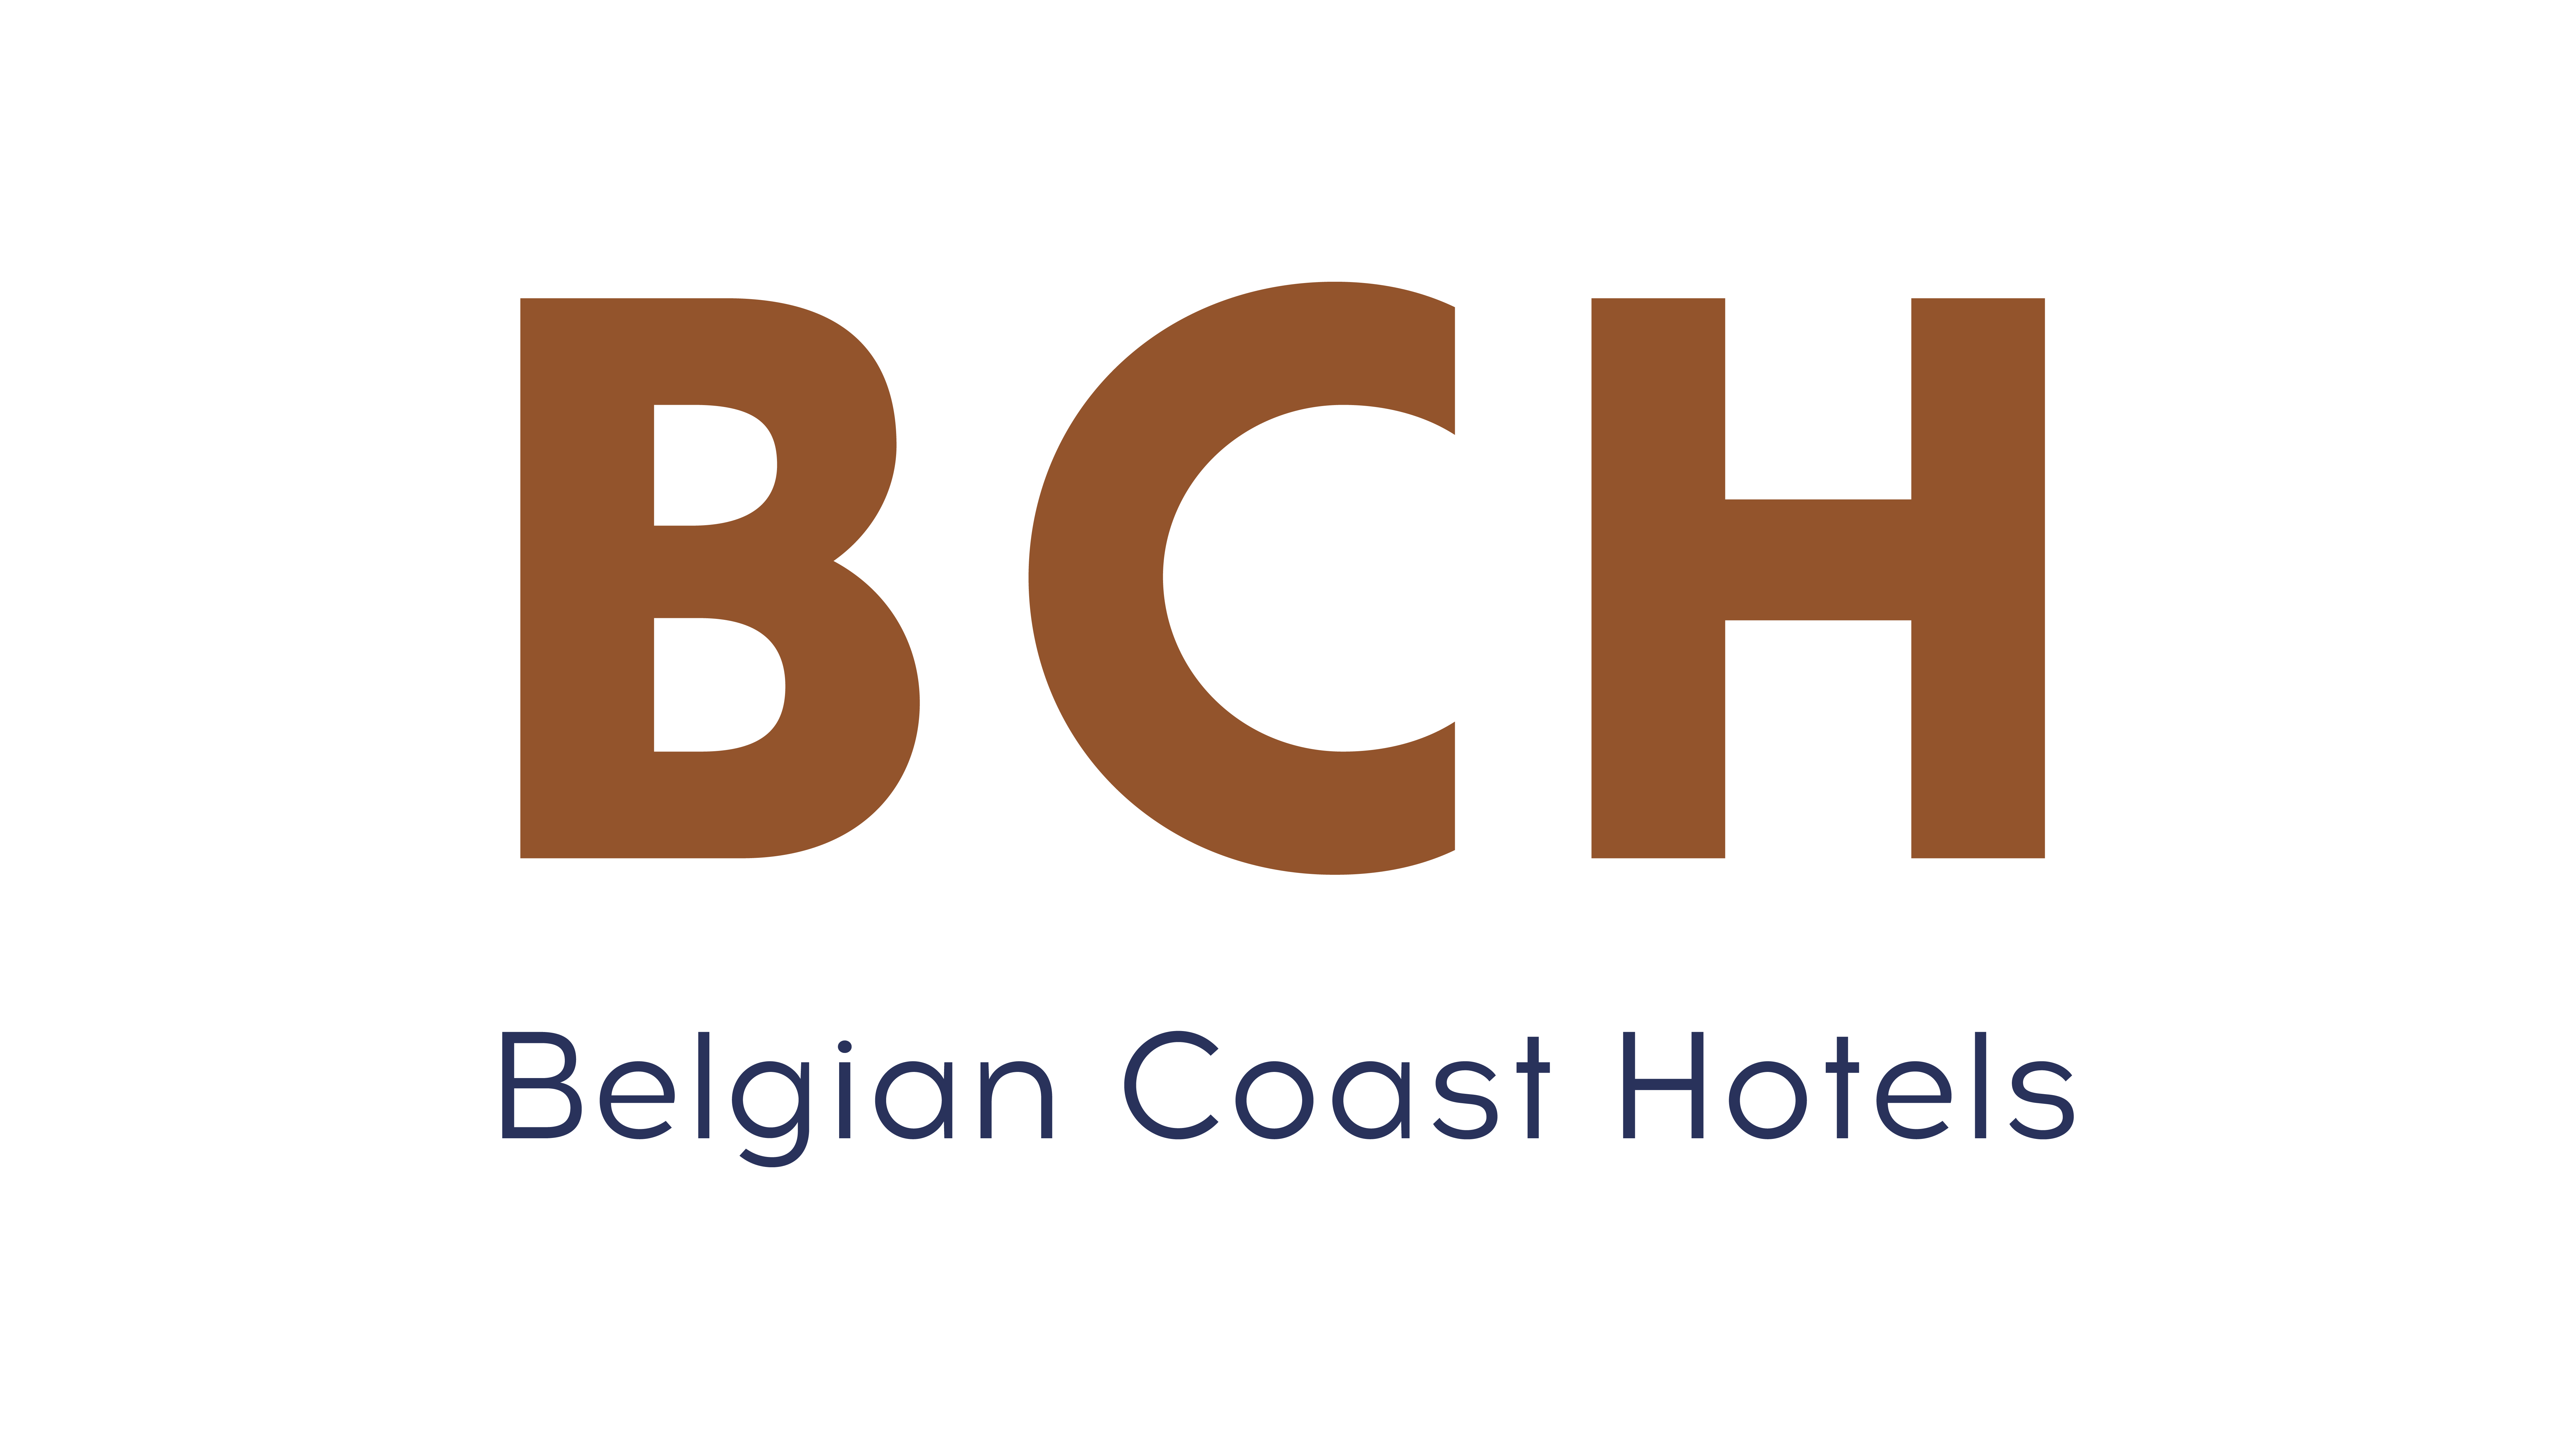 Belgian Coast Hotels